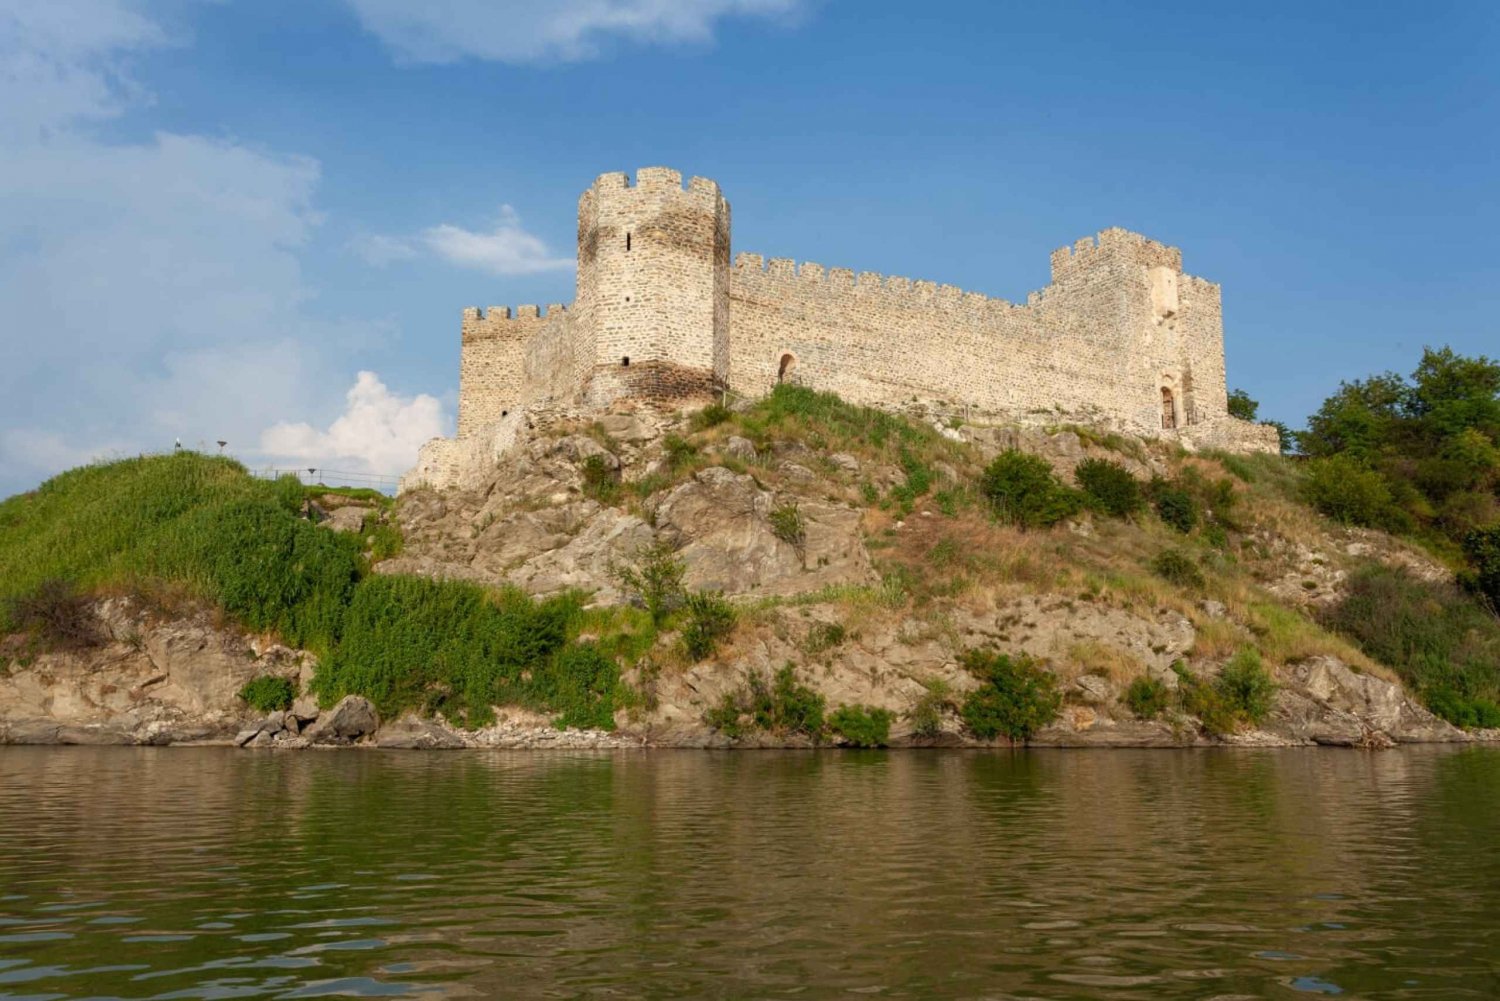 De Belgrado: Viagem de um dia pelo Danúbio com degustação de vinho e conhaque